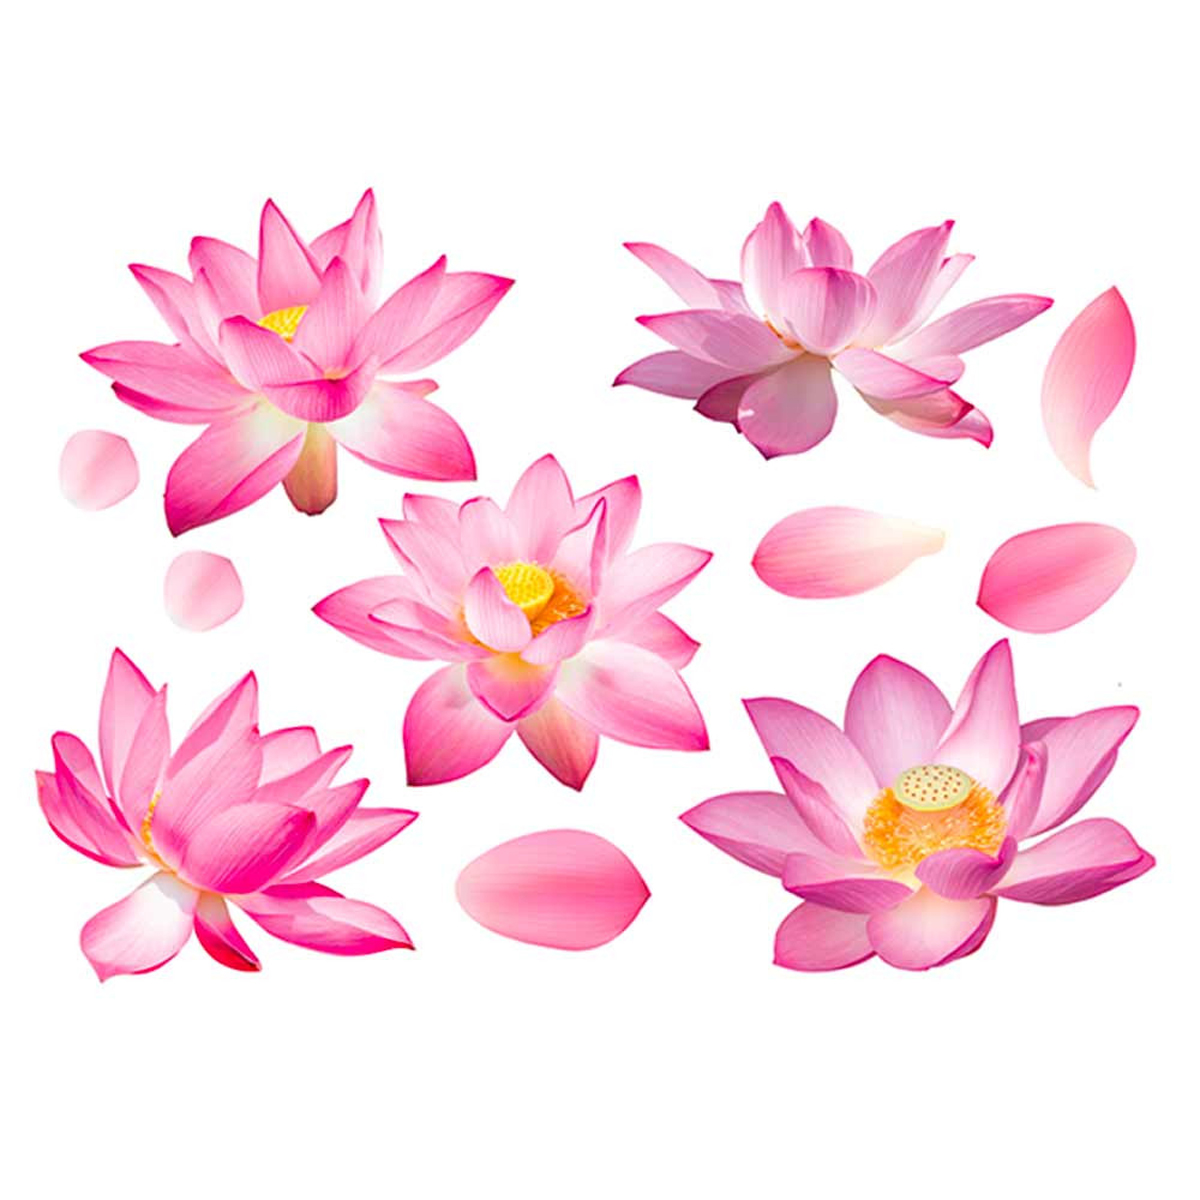 Planche de stickers \'Lotus\' rose - 50x70 cm - [Q8286]